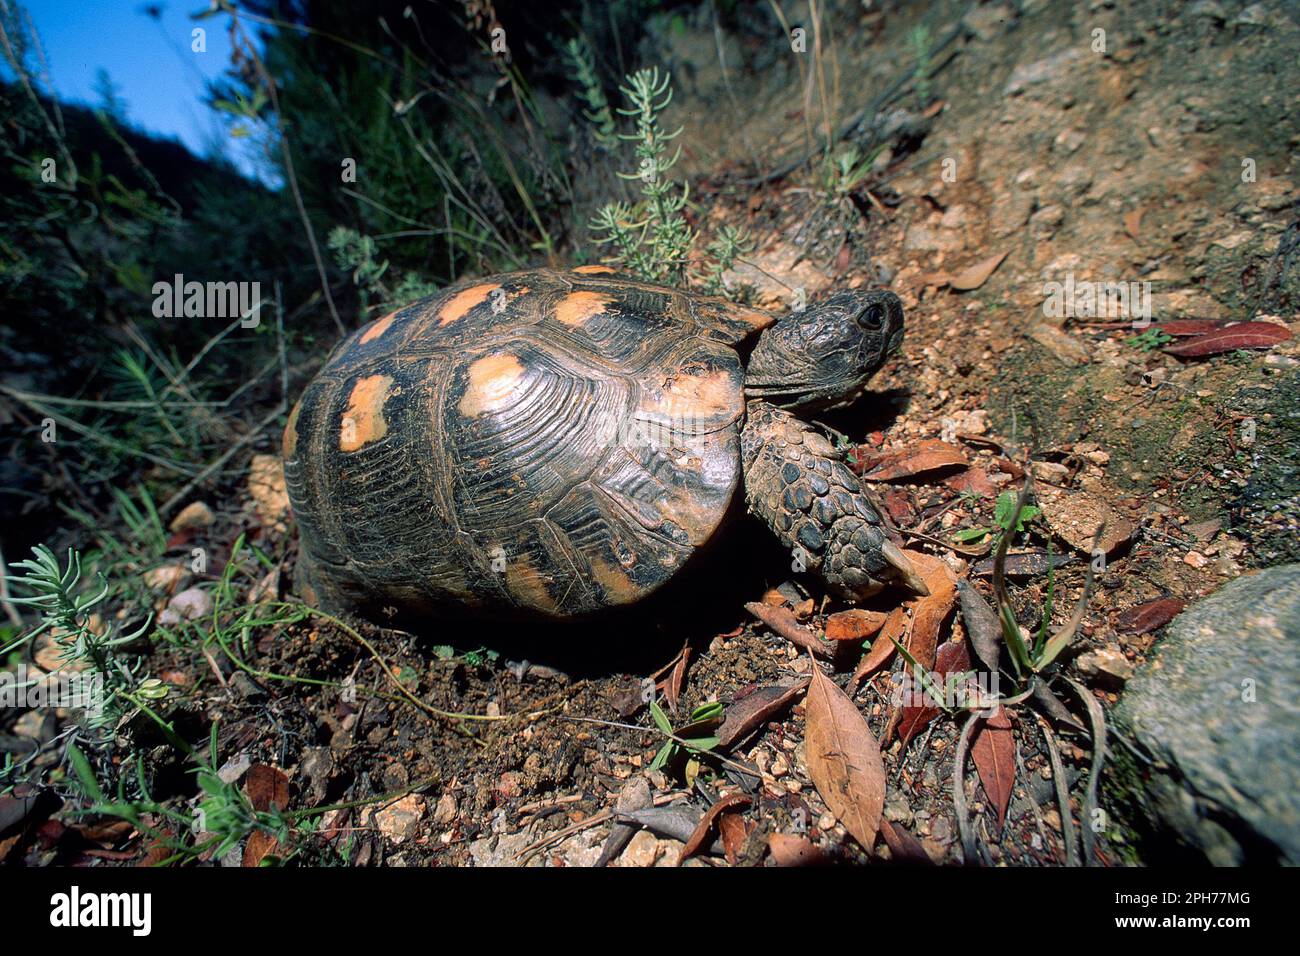 Randschildkröte, Testudo marginata. Diese Schildkröte findet man nur in Griechenland, auf einigen Inseln der Ägäis und auf Sardinien. Stockfoto